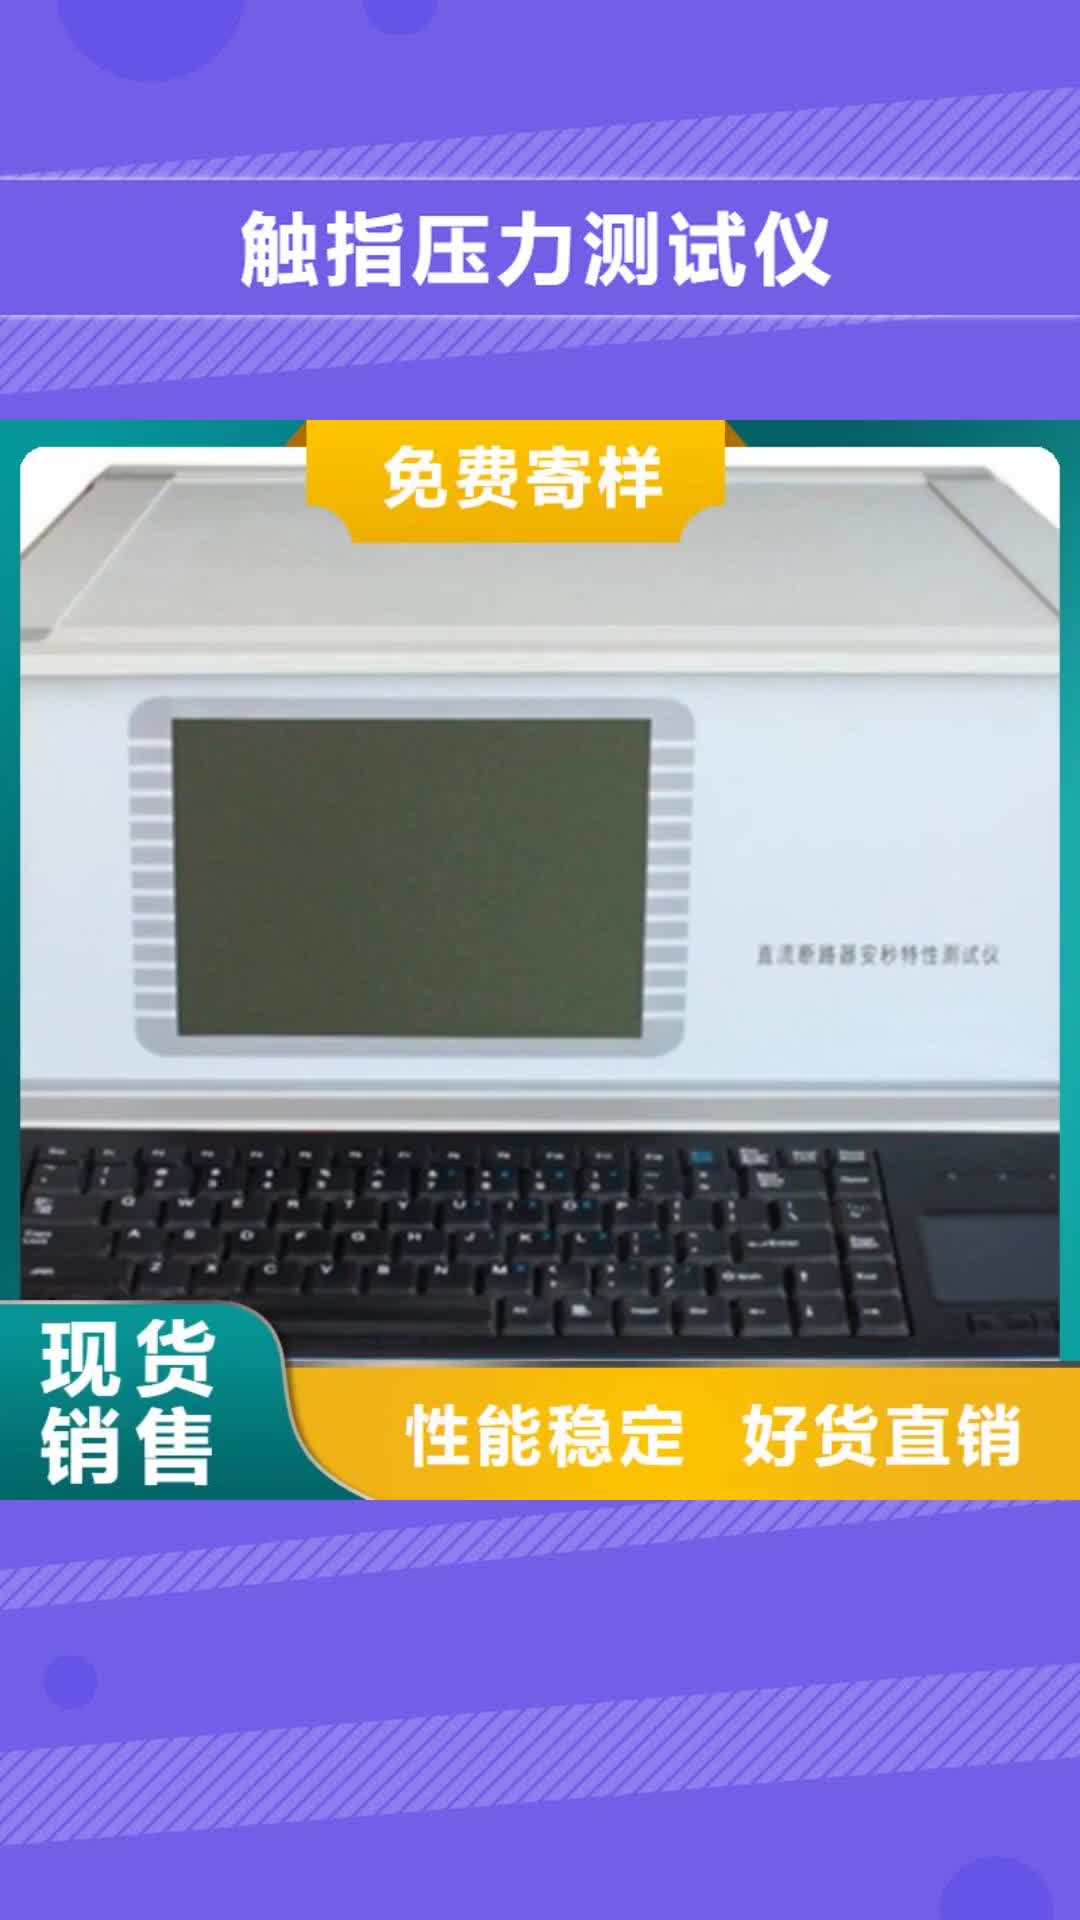 丽江 触指压力测试仪,【蓄电池测试仪】符合行业标准